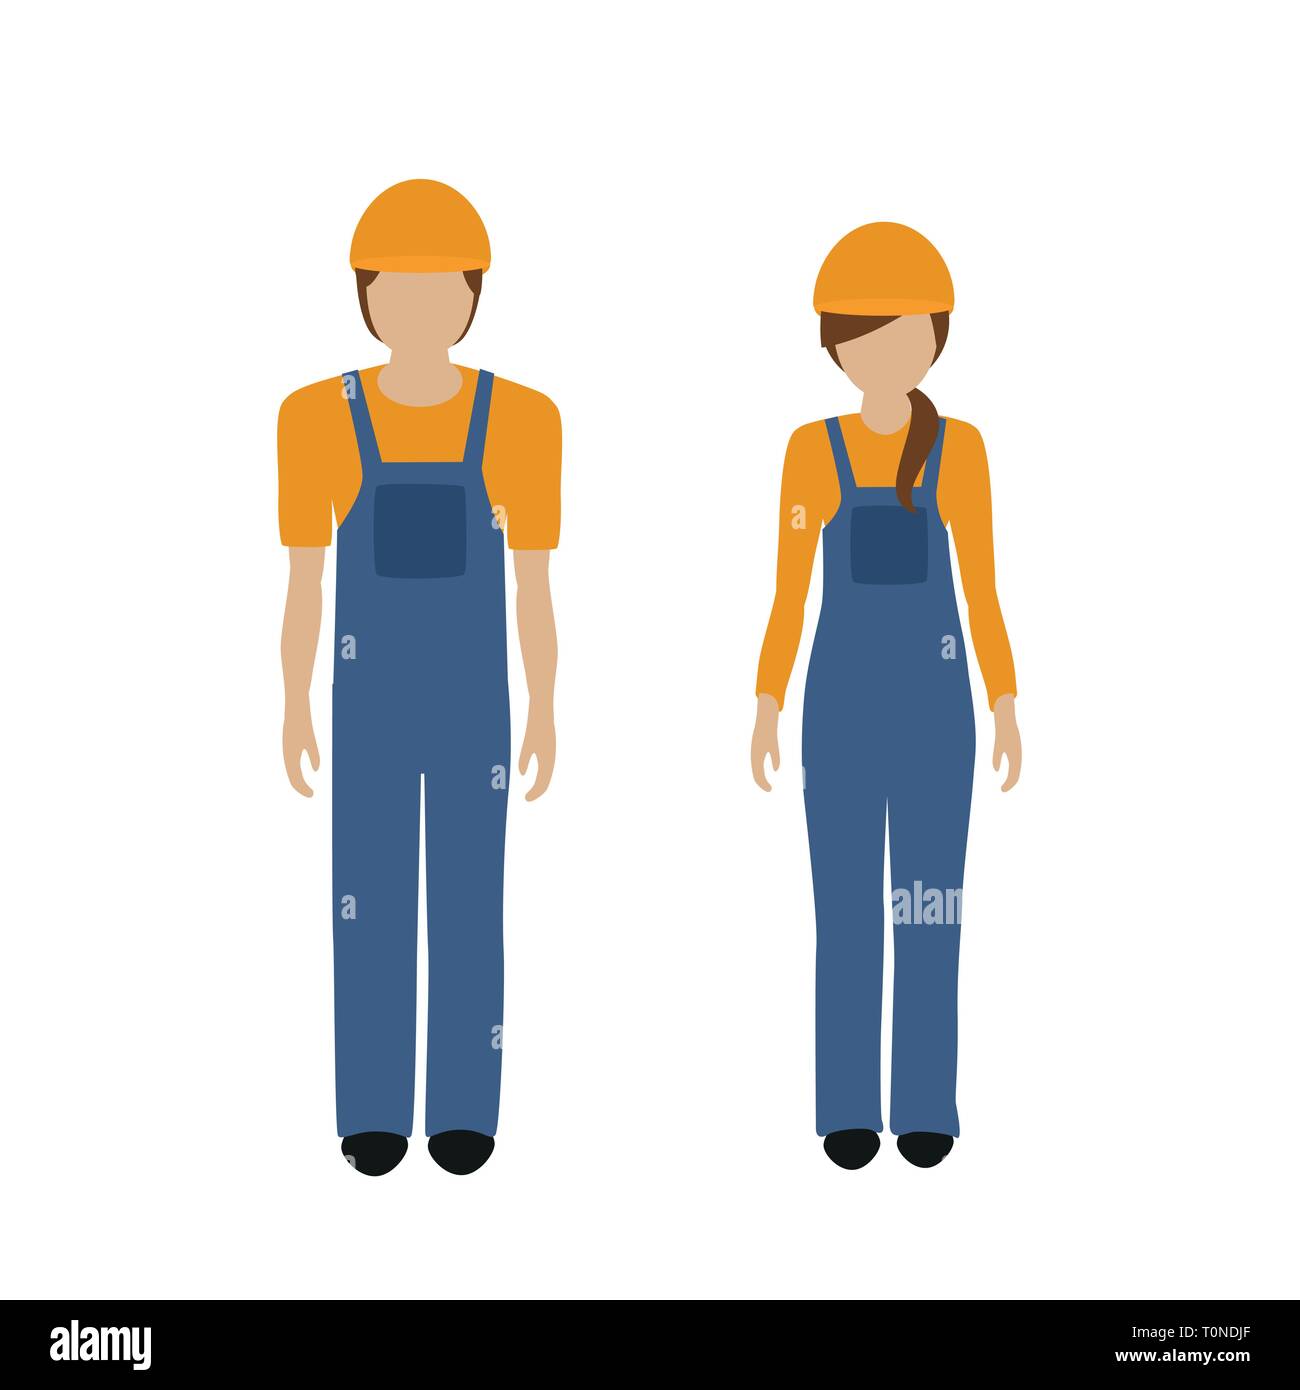 L'homme et la femme de caractère construction worker boiler suit isolated on white background vector illustration EPS10 Illustration de Vecteur